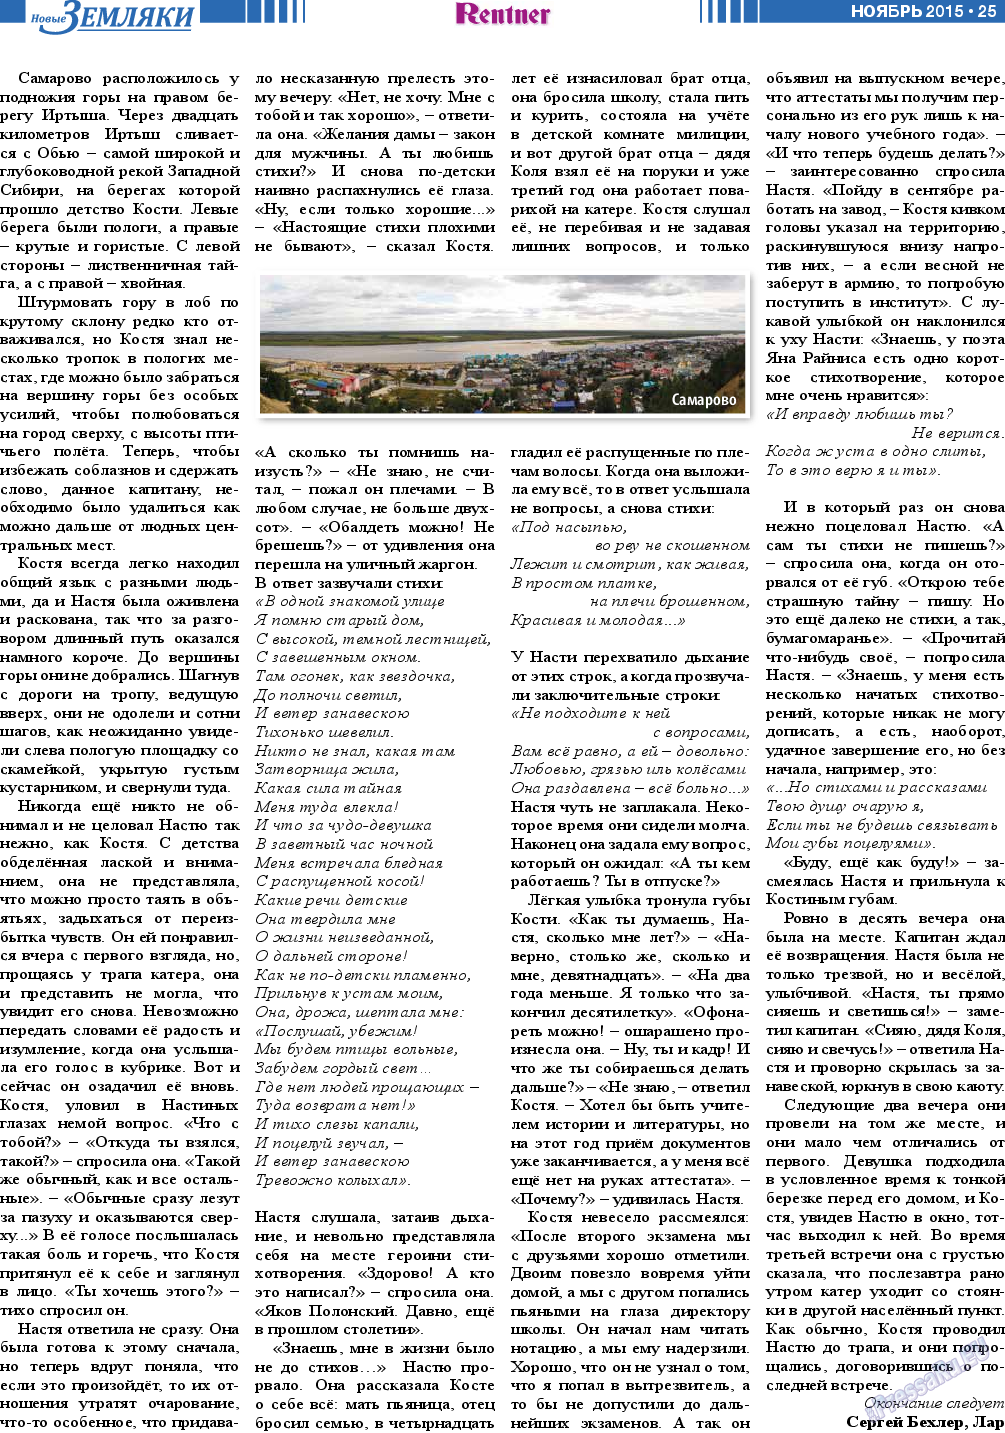 Новые Земляки (газета). 2015 год, номер 11, стр. 25